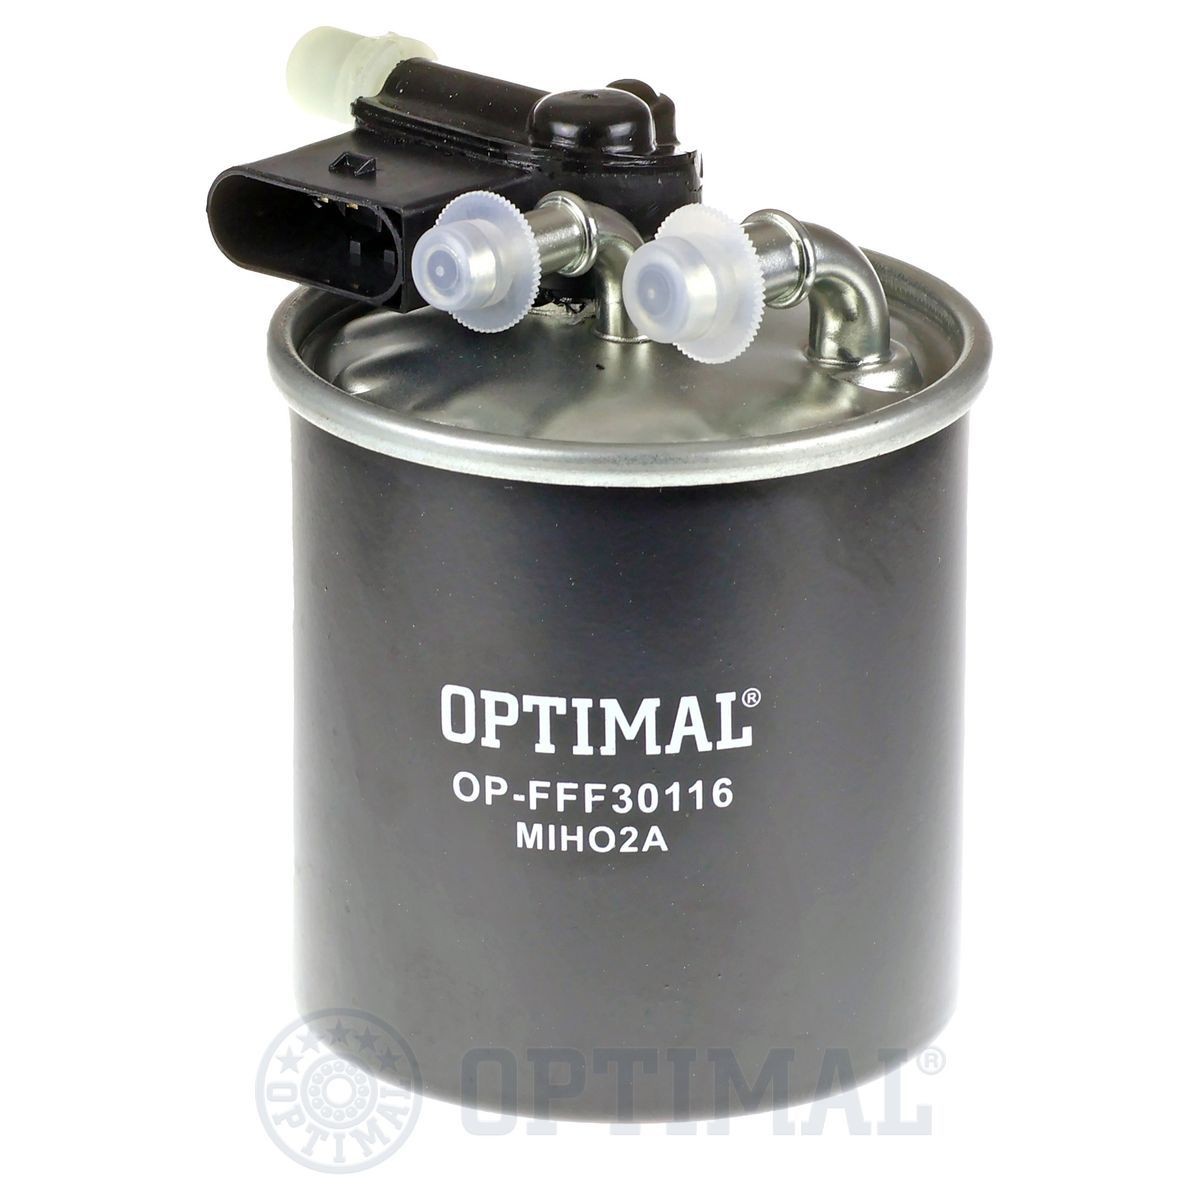 OPTIMAL OP-FFF30116 Fuel filter 642 090 60 52